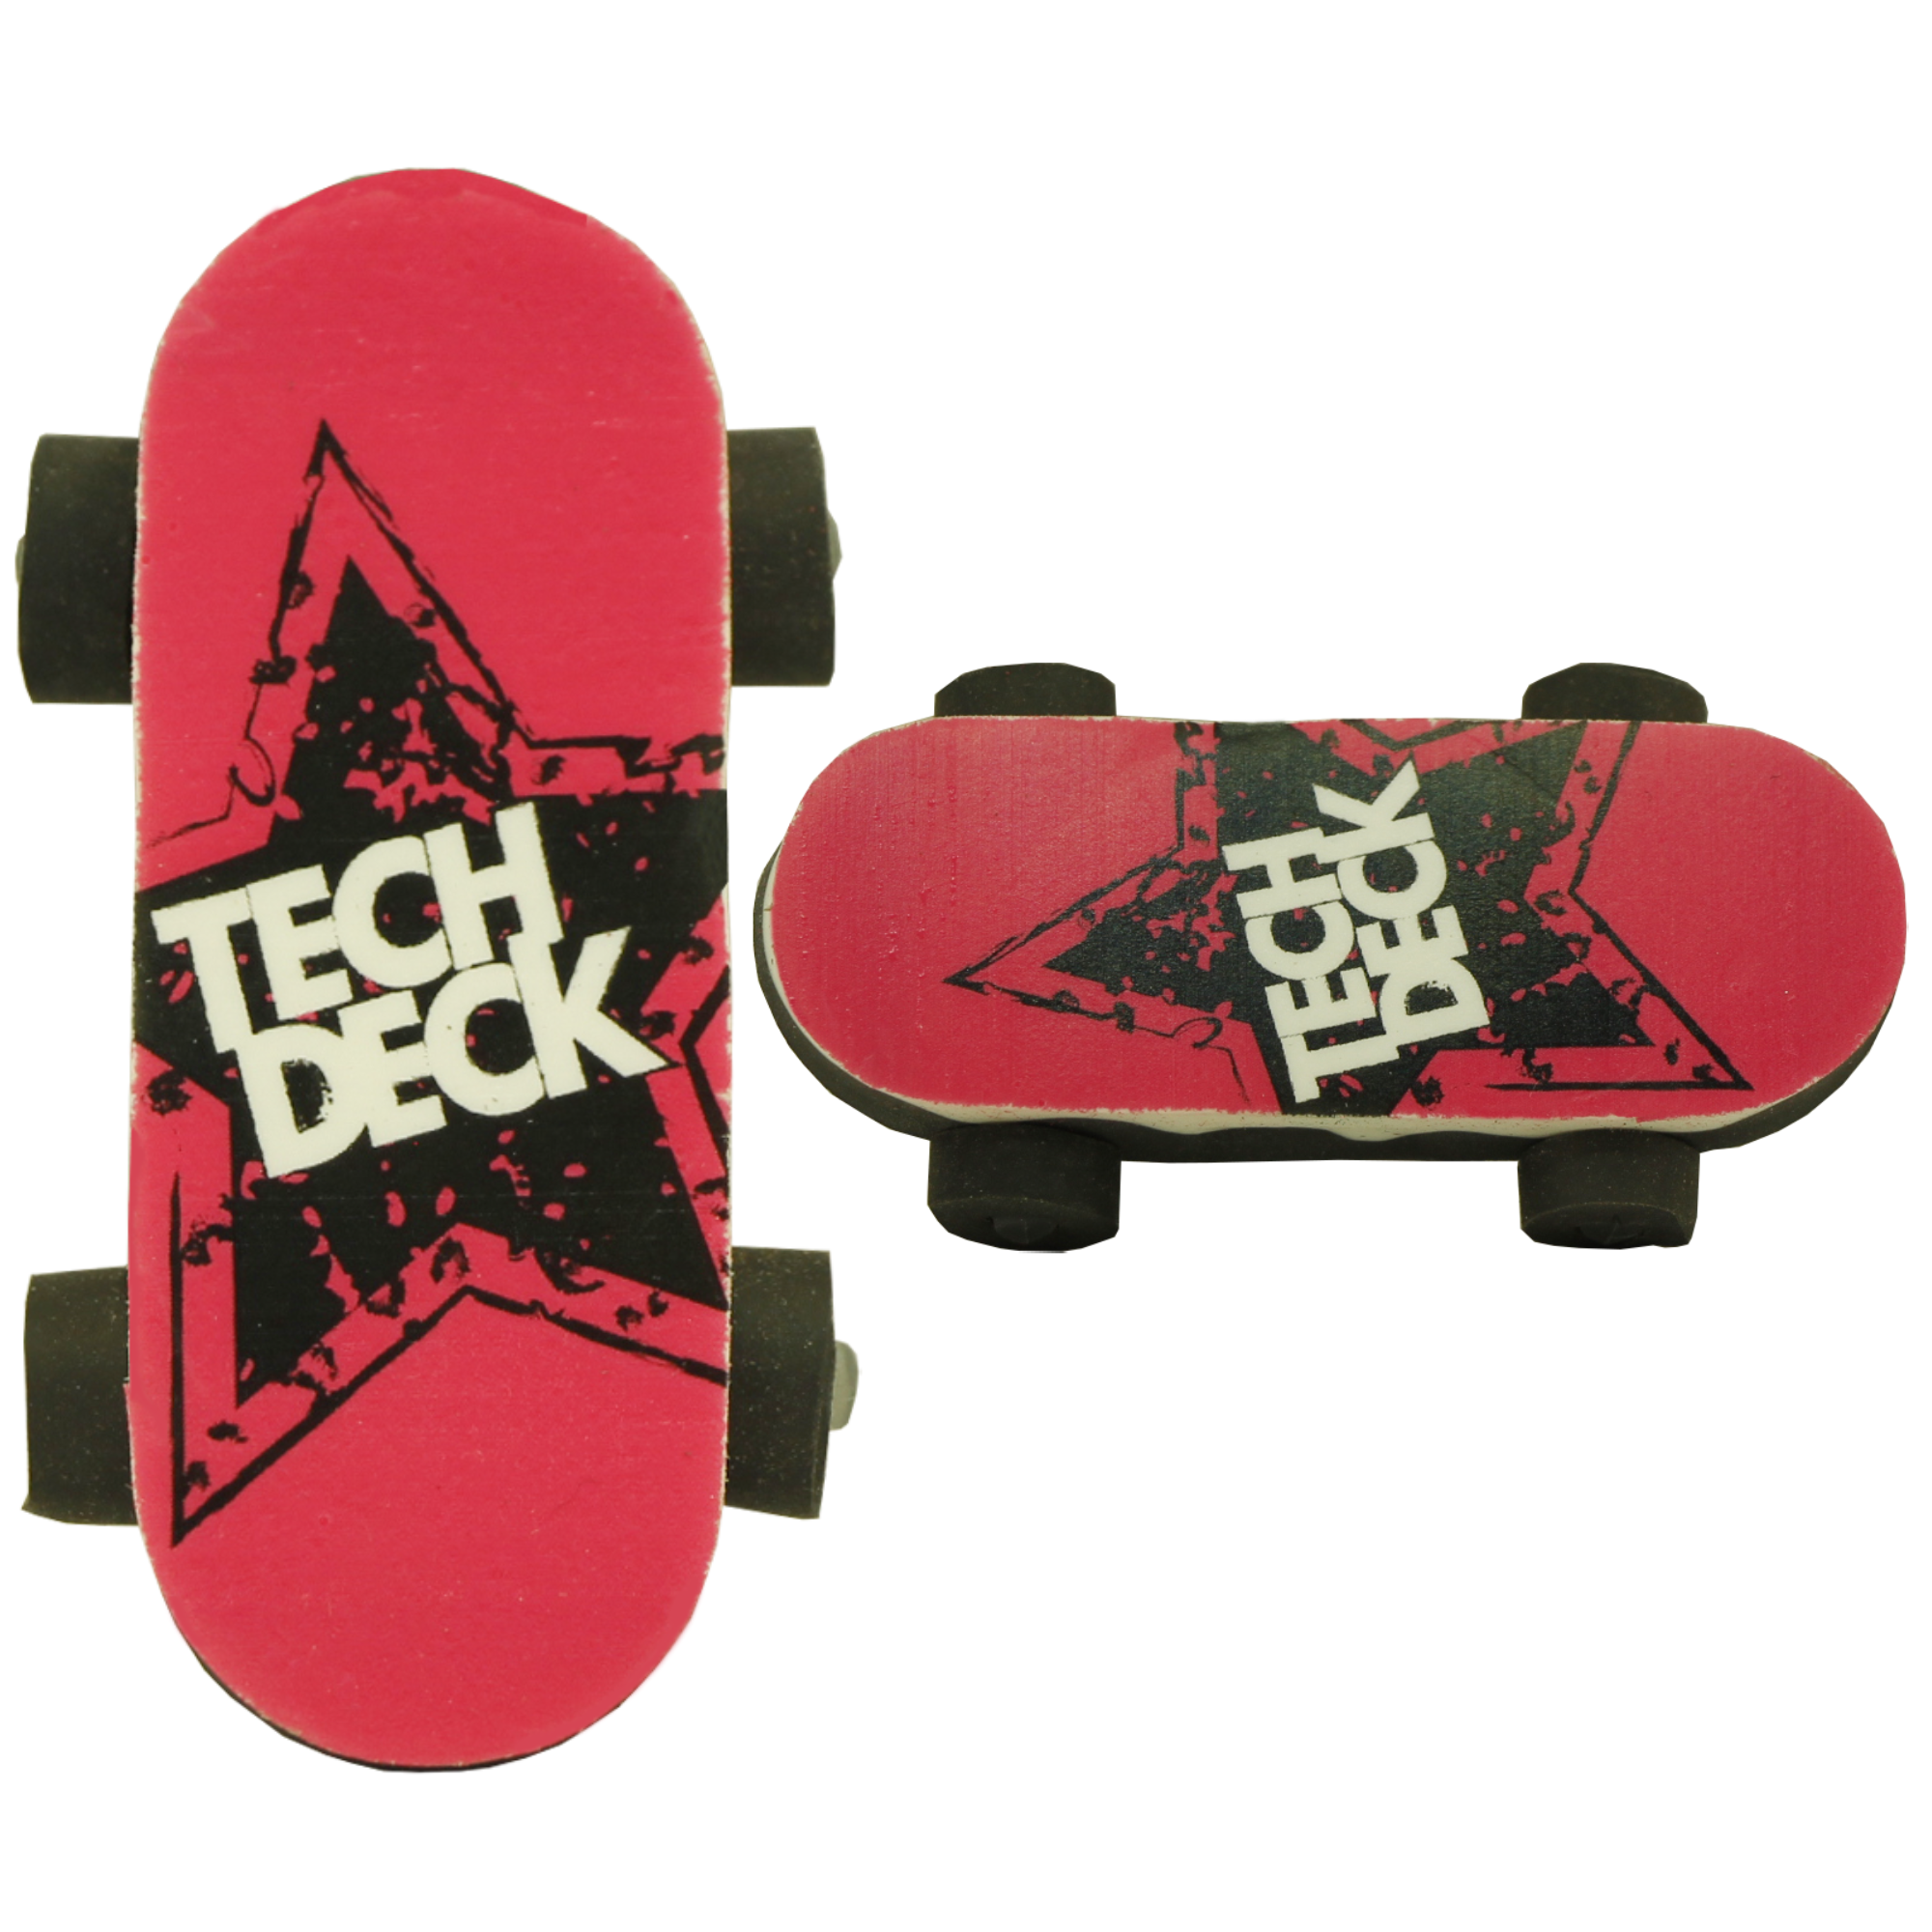 Tech Deck Bendy Boards Rubber Eraser Finger Boards - Pack of 10 - Toptoys2u